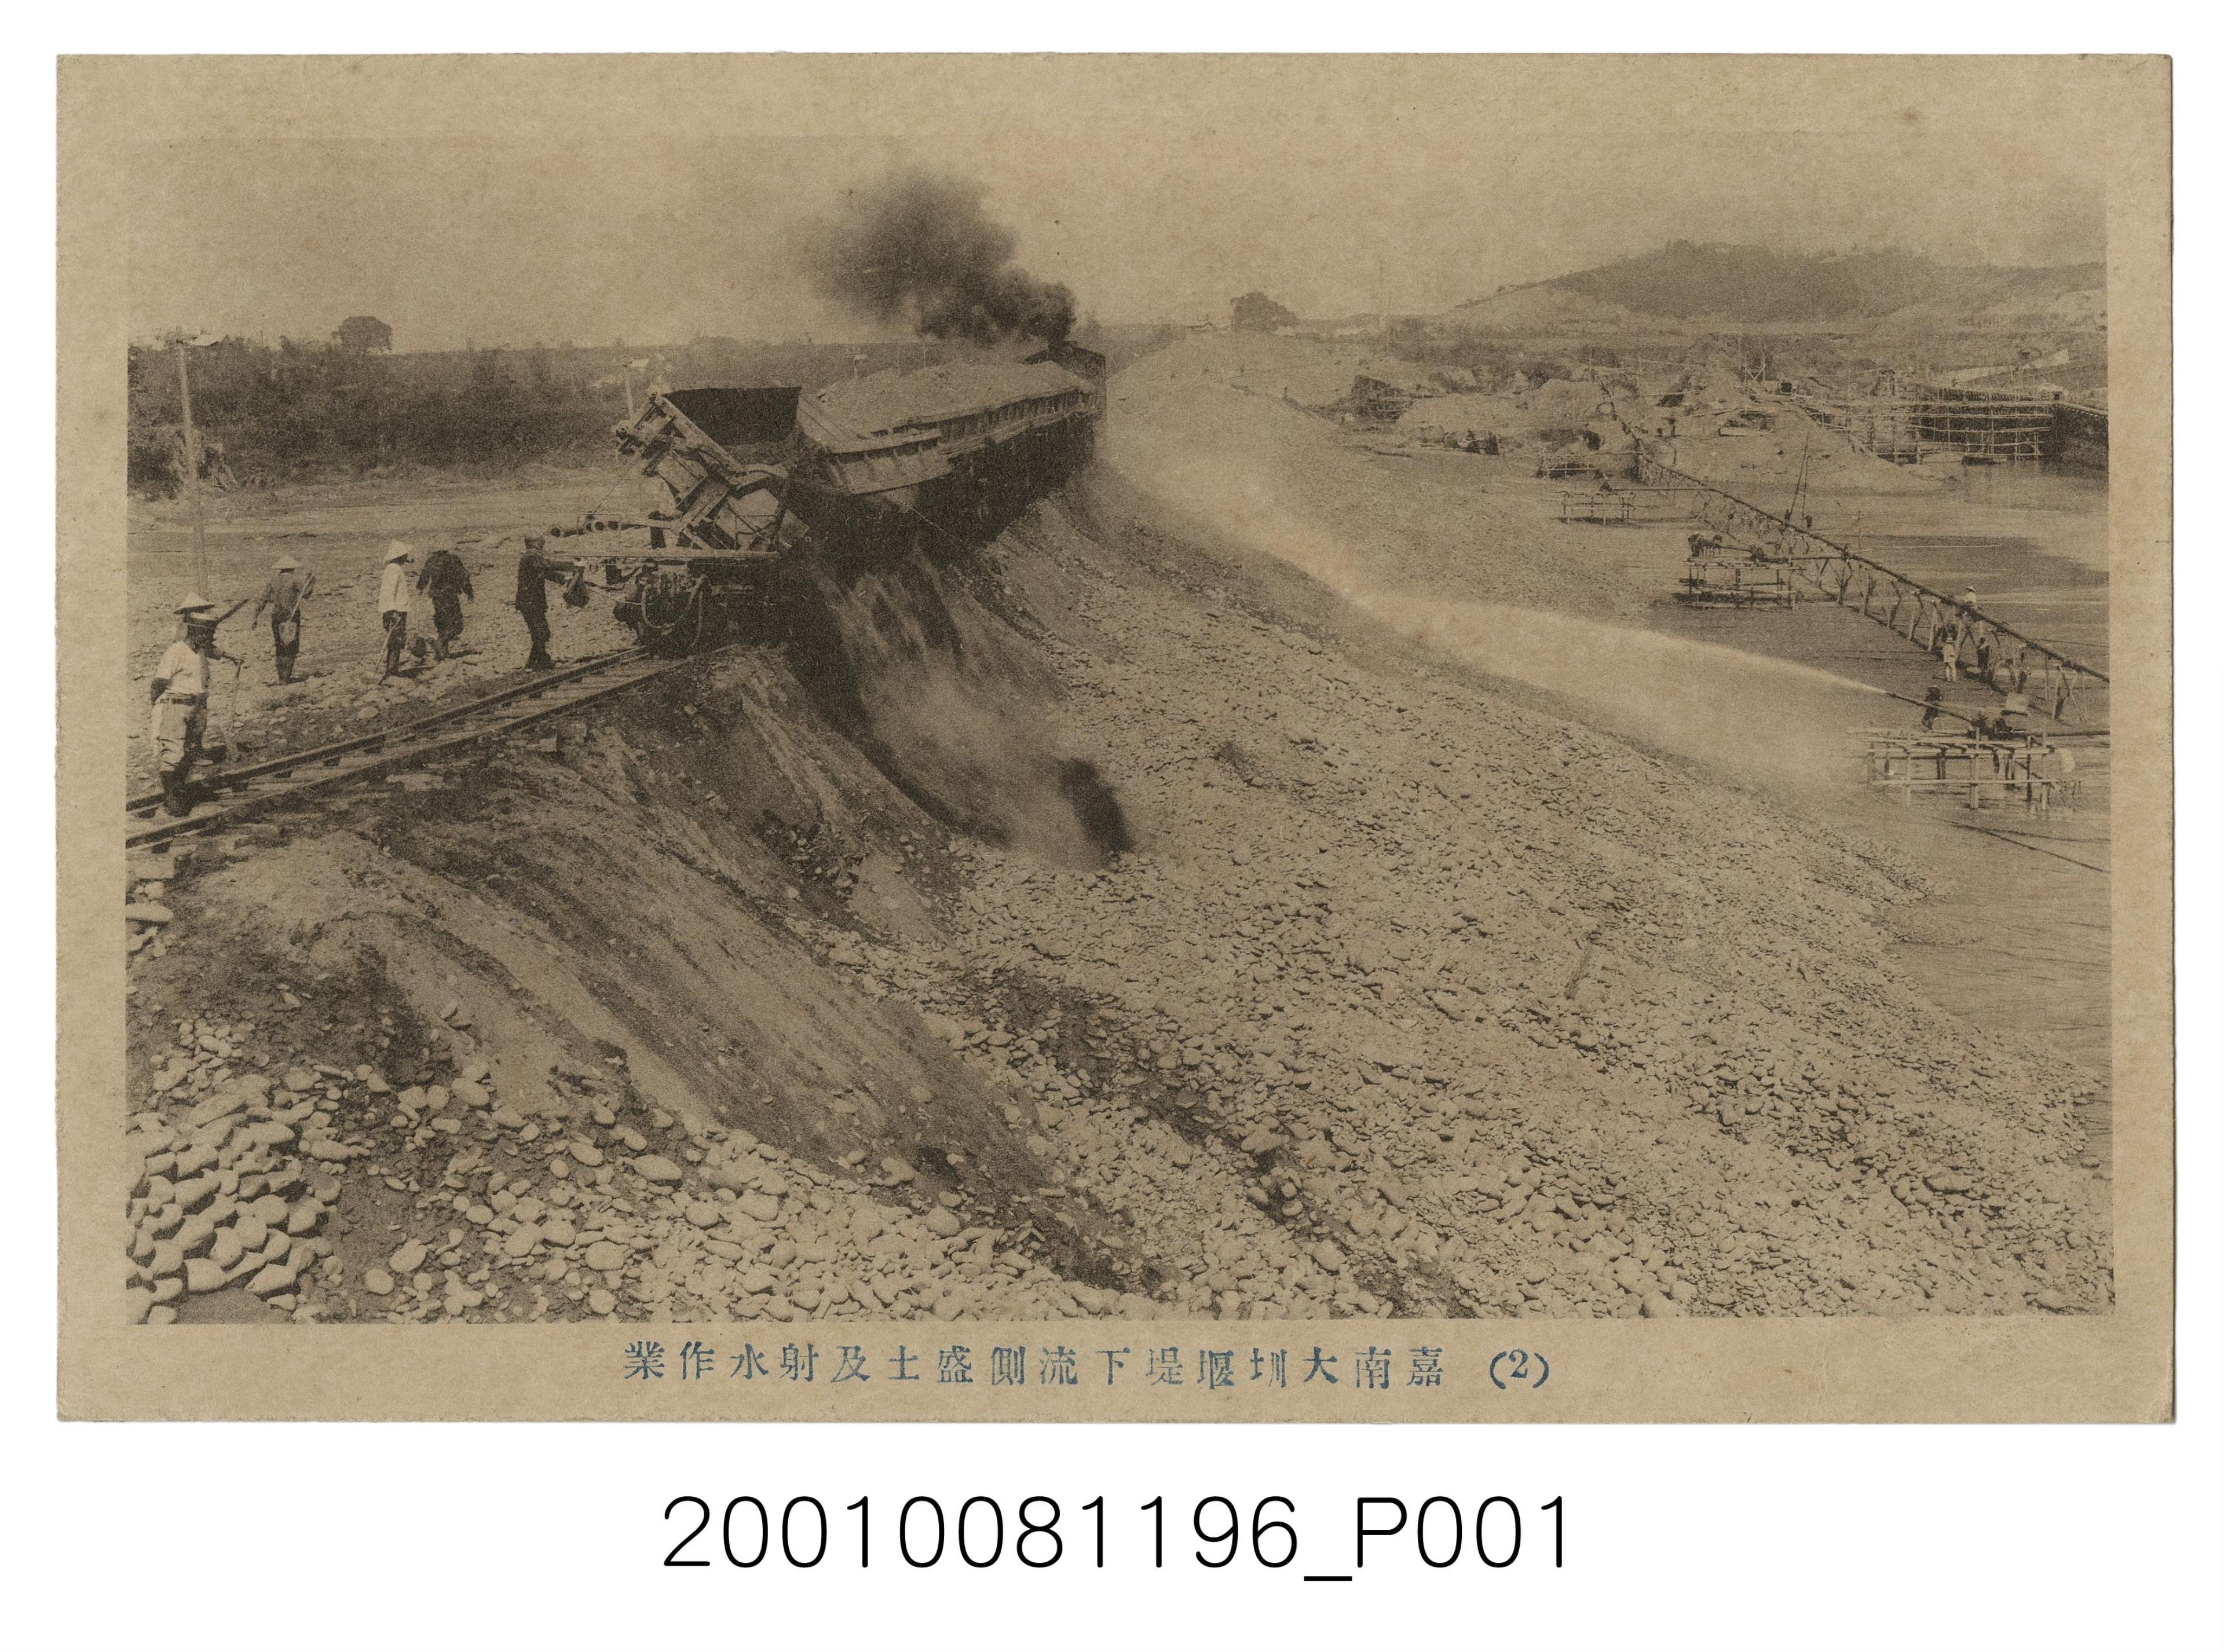 嘉南大圳堰堤下流側盛土及射水作業 (共2張)